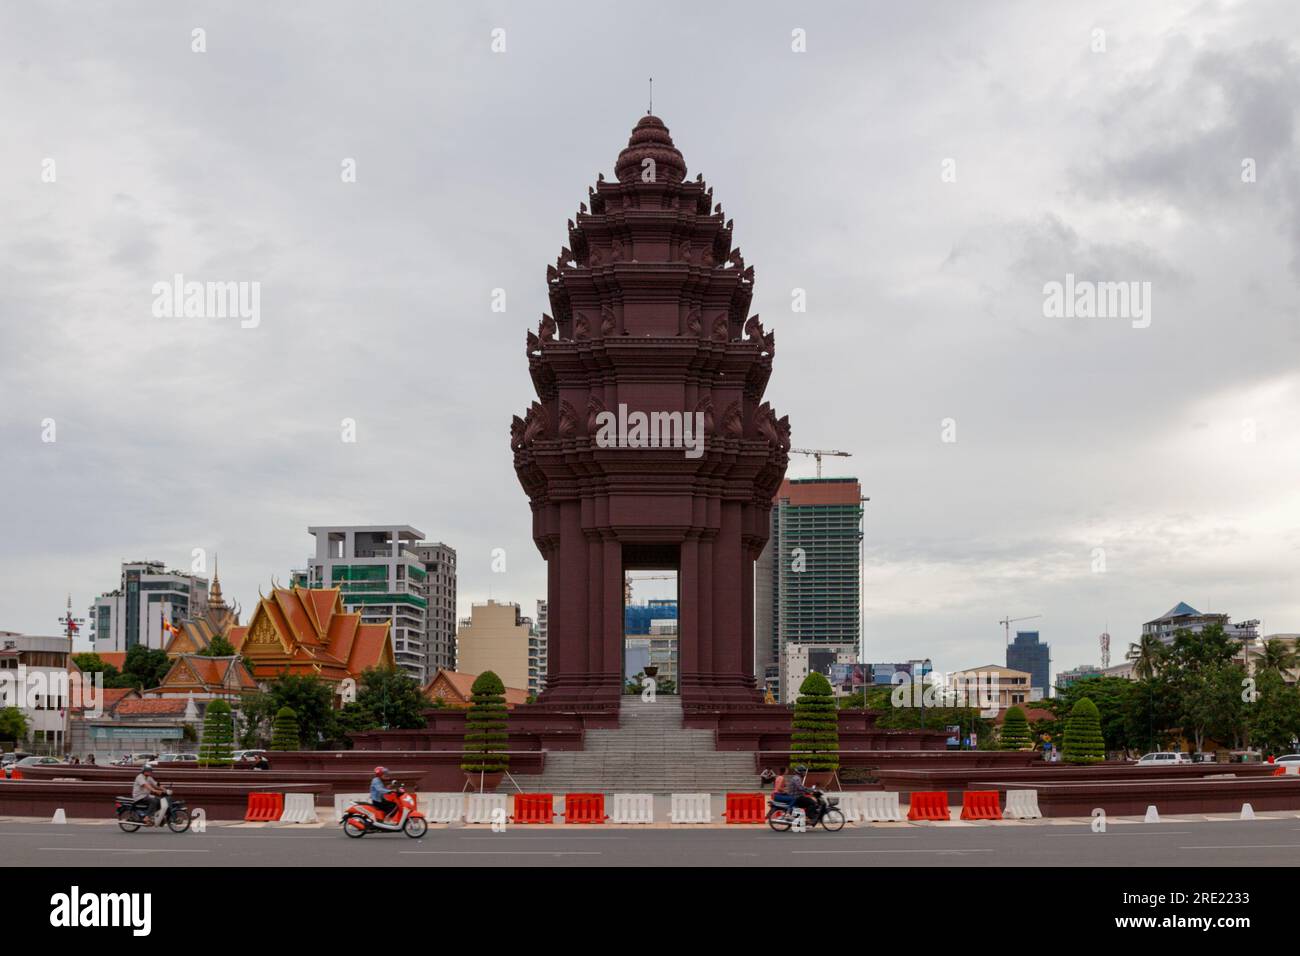 Phnom Penh, Kambodscha - August 26 2018: Das Unabhängigkeitsdenkmal wurde 1958 erbaut, um Kambodschas Unabhängigkeit von Frankreich im Jahr 1953 zu gedenken. Stockfoto